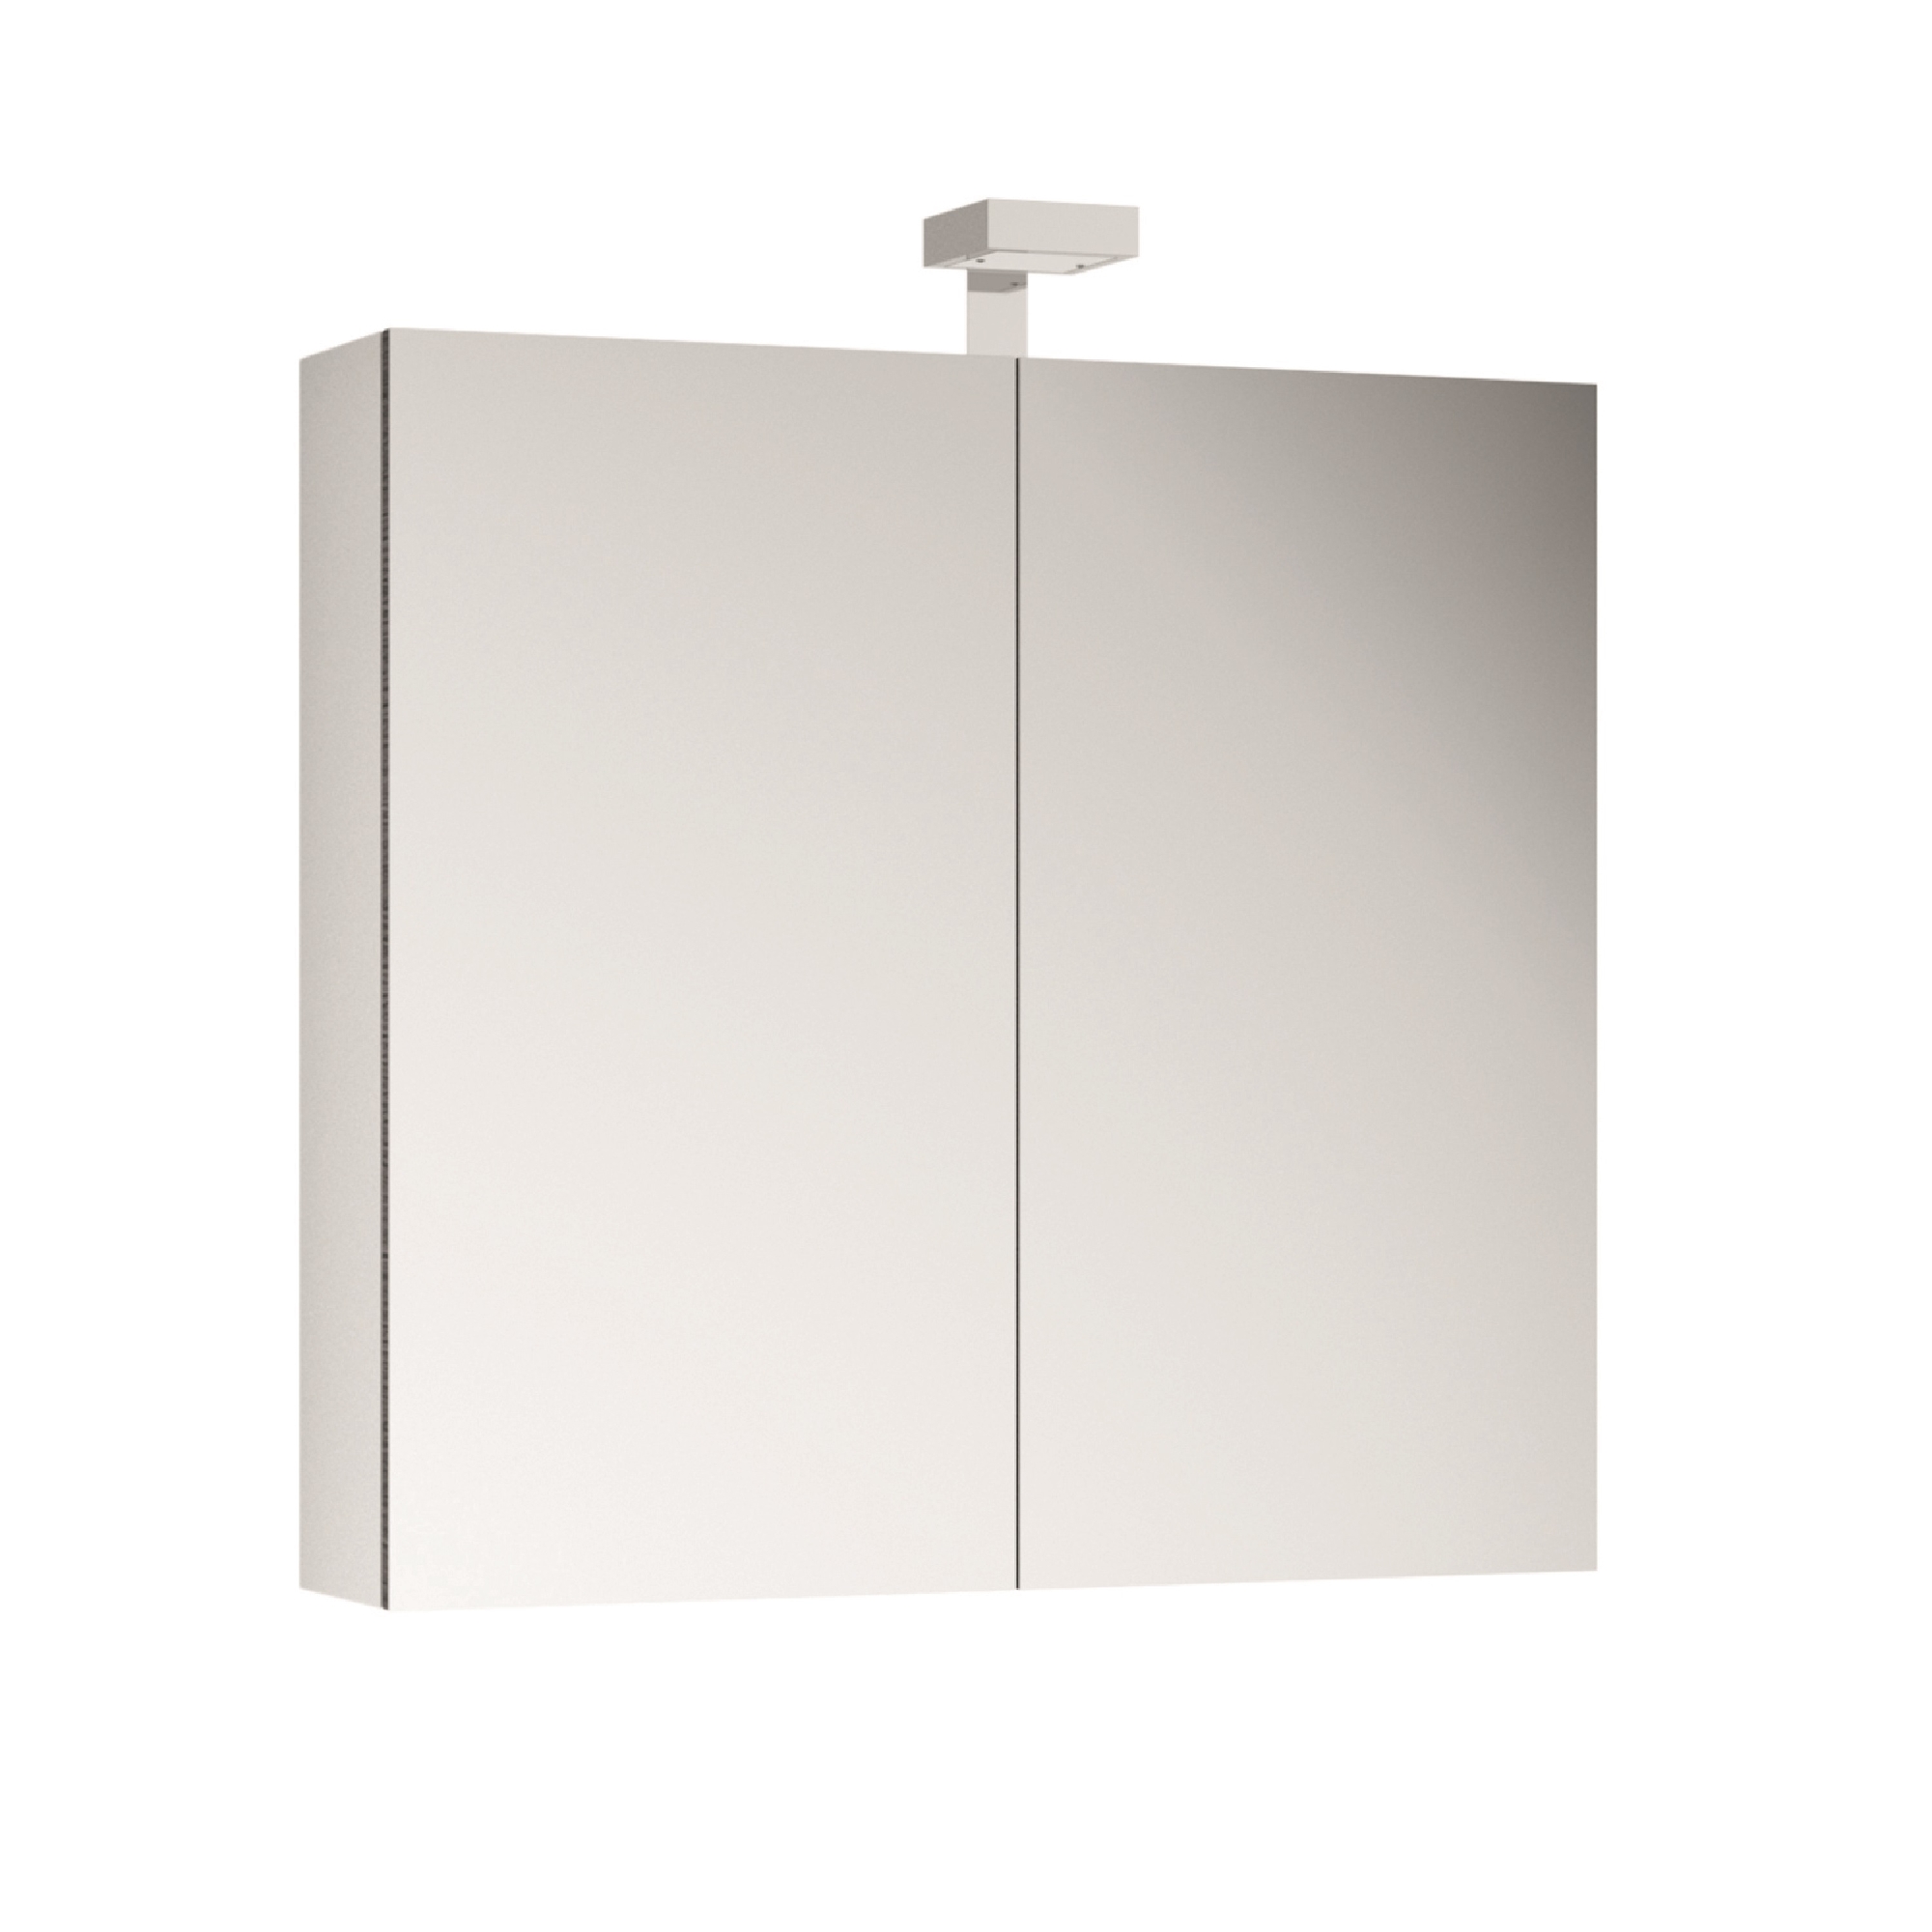 ALLIBERT Spiegelschrank Spiegel Badmöbel vormontiert weiß 80 cm LED Beleuchtung